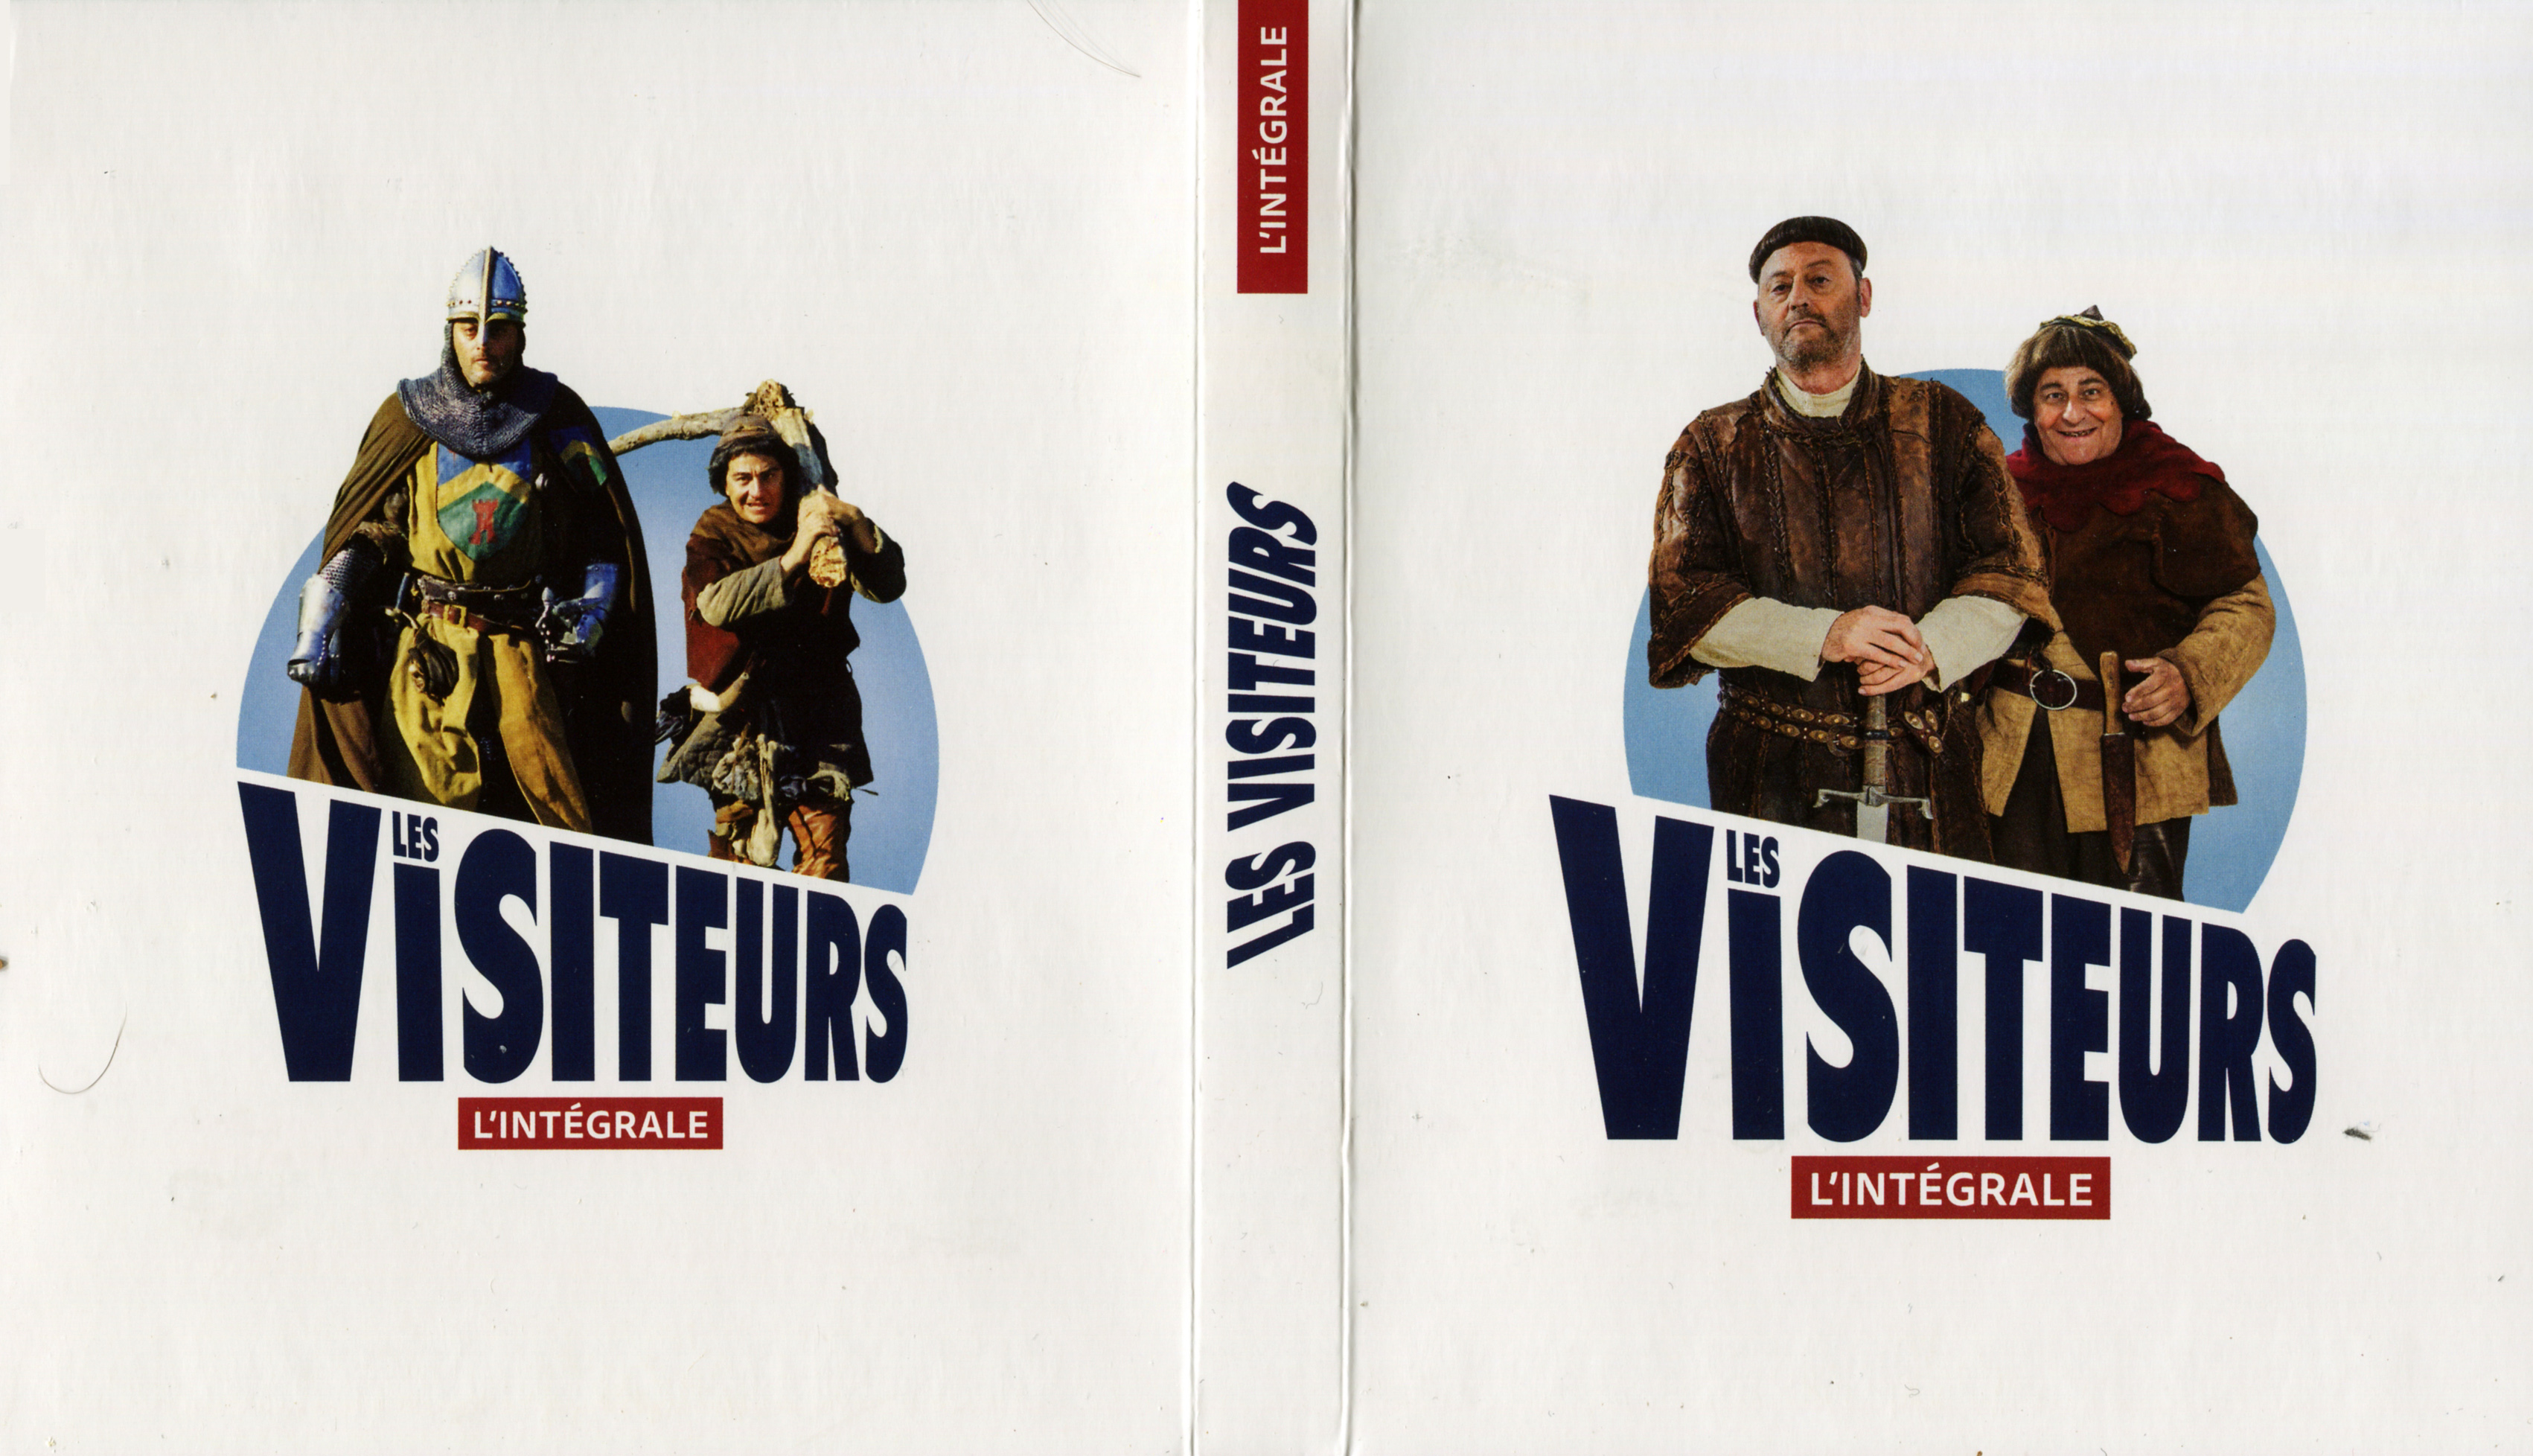 Jaquette DVD Les visteurs Trilogie (BLU-RAY) v2